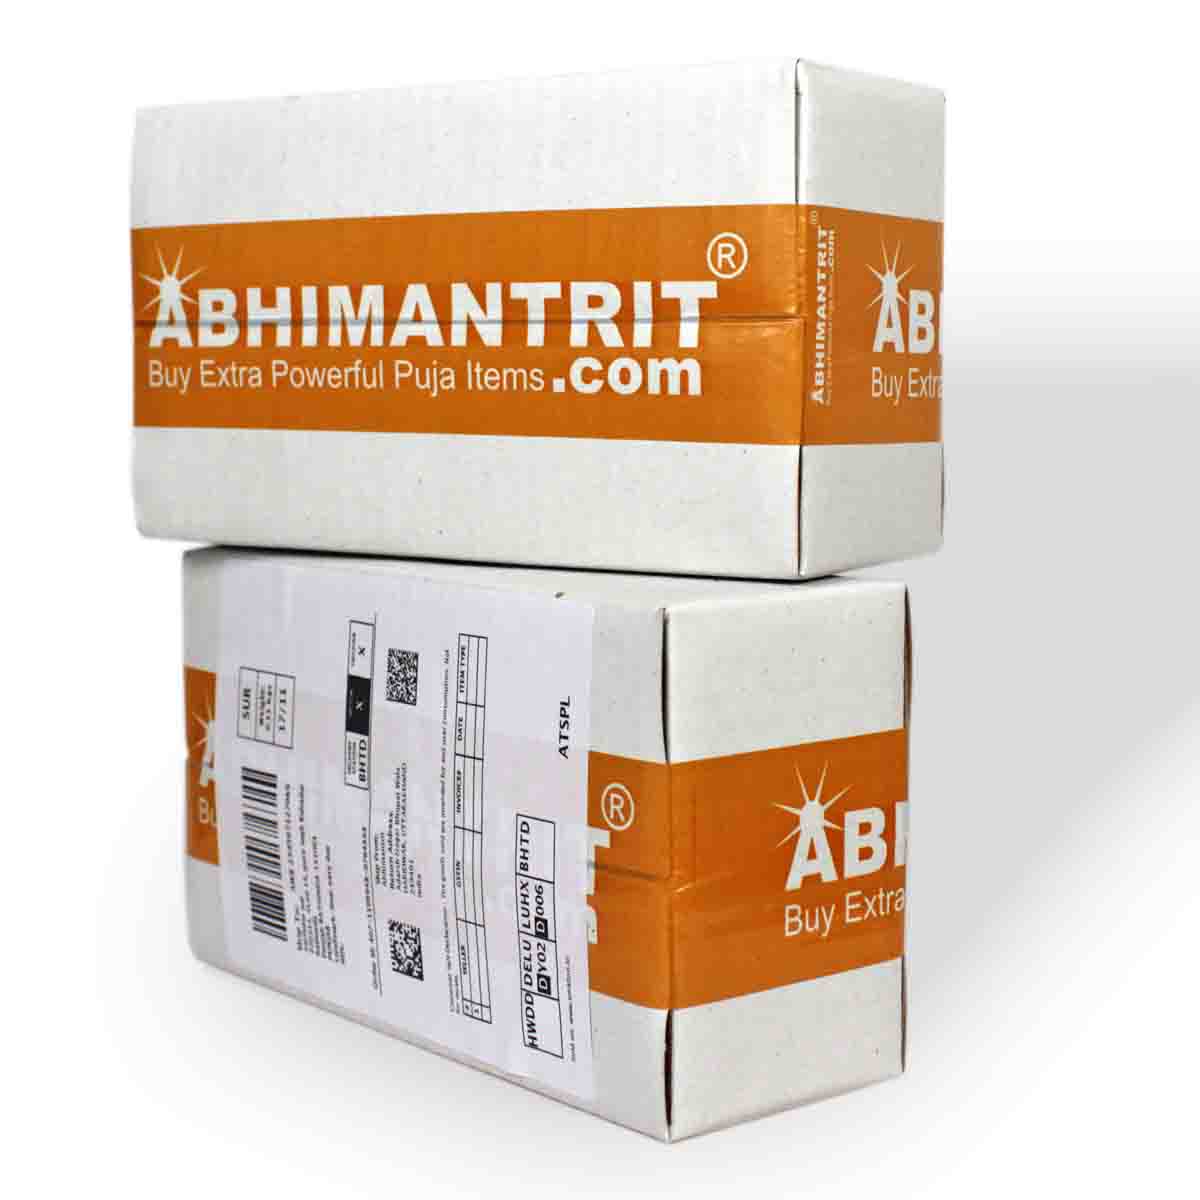 Abhimantrit Packing